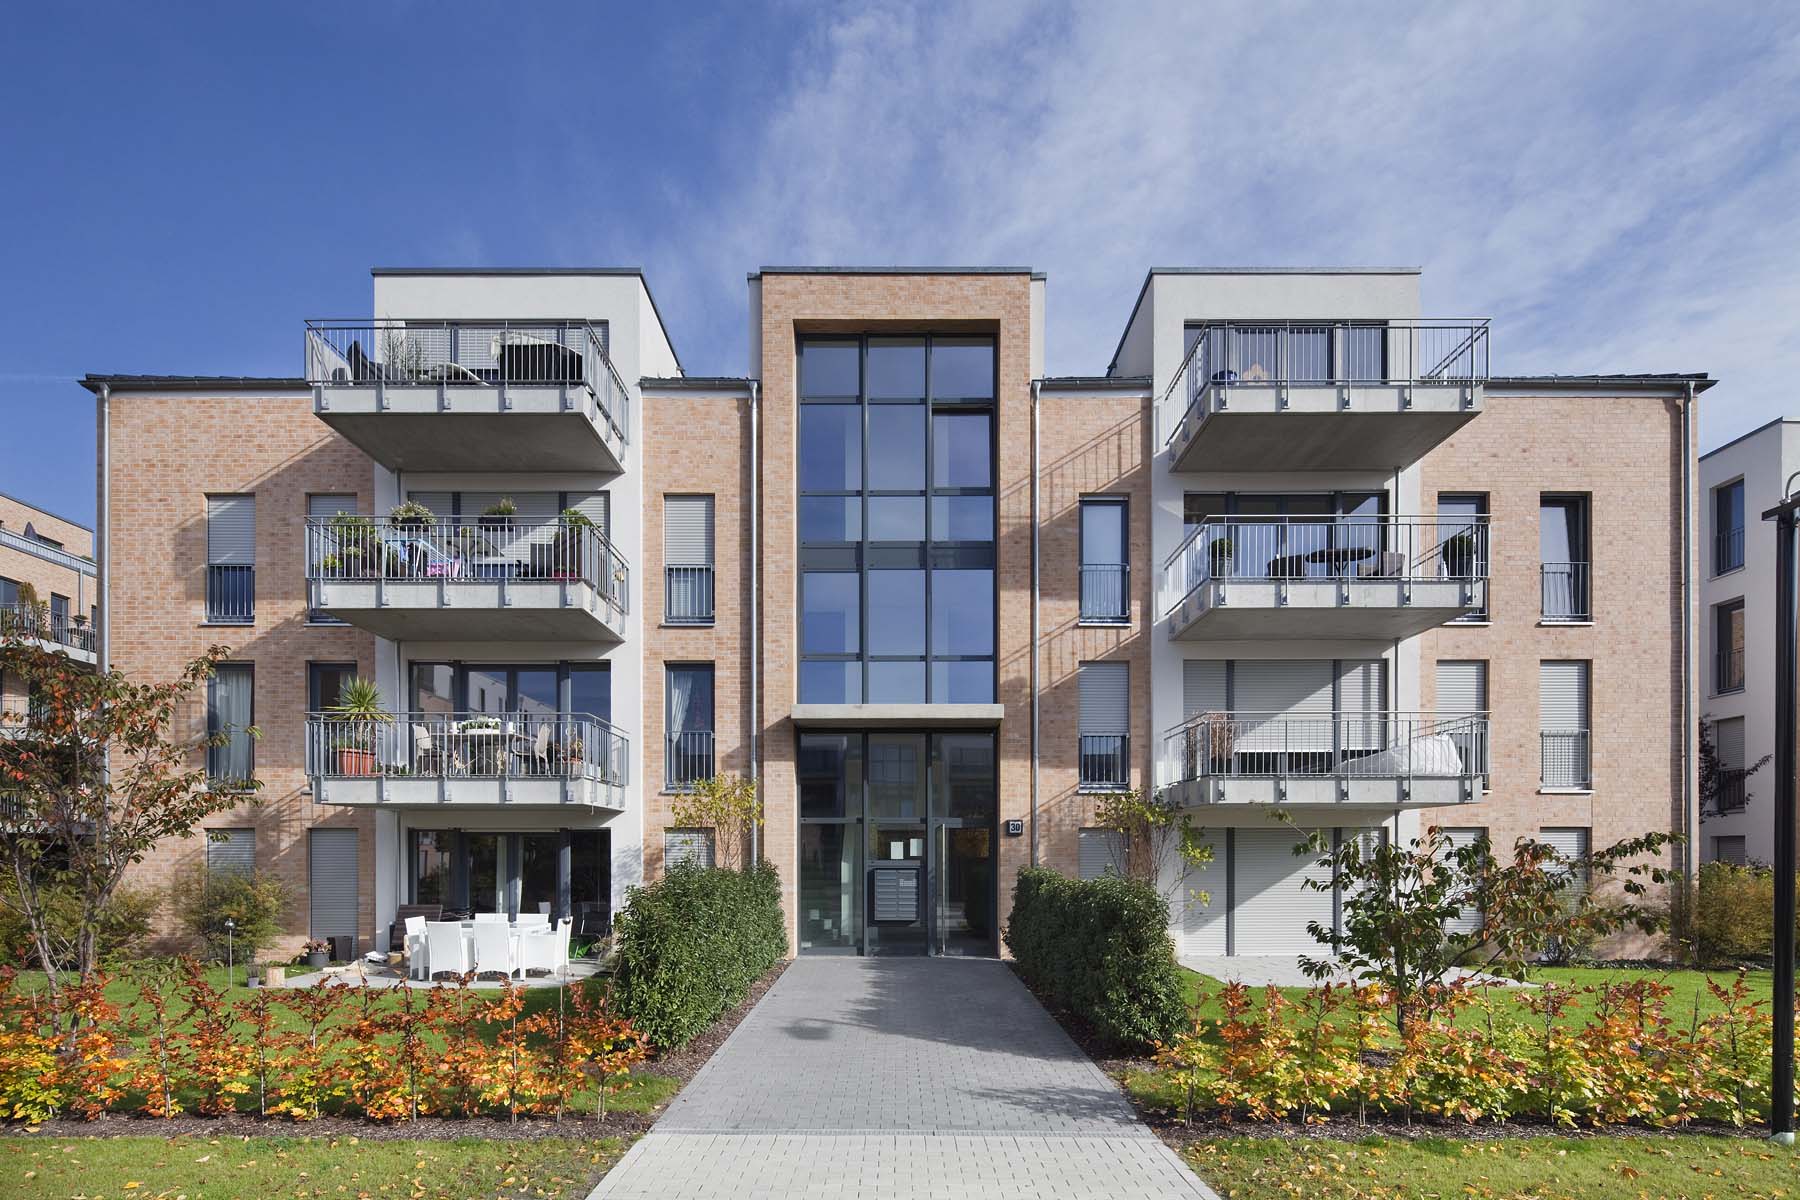 Wohnungsbau Wildpark Düsseldorf    Geitner Architekten       Architekturfotografie Jens Kirchner